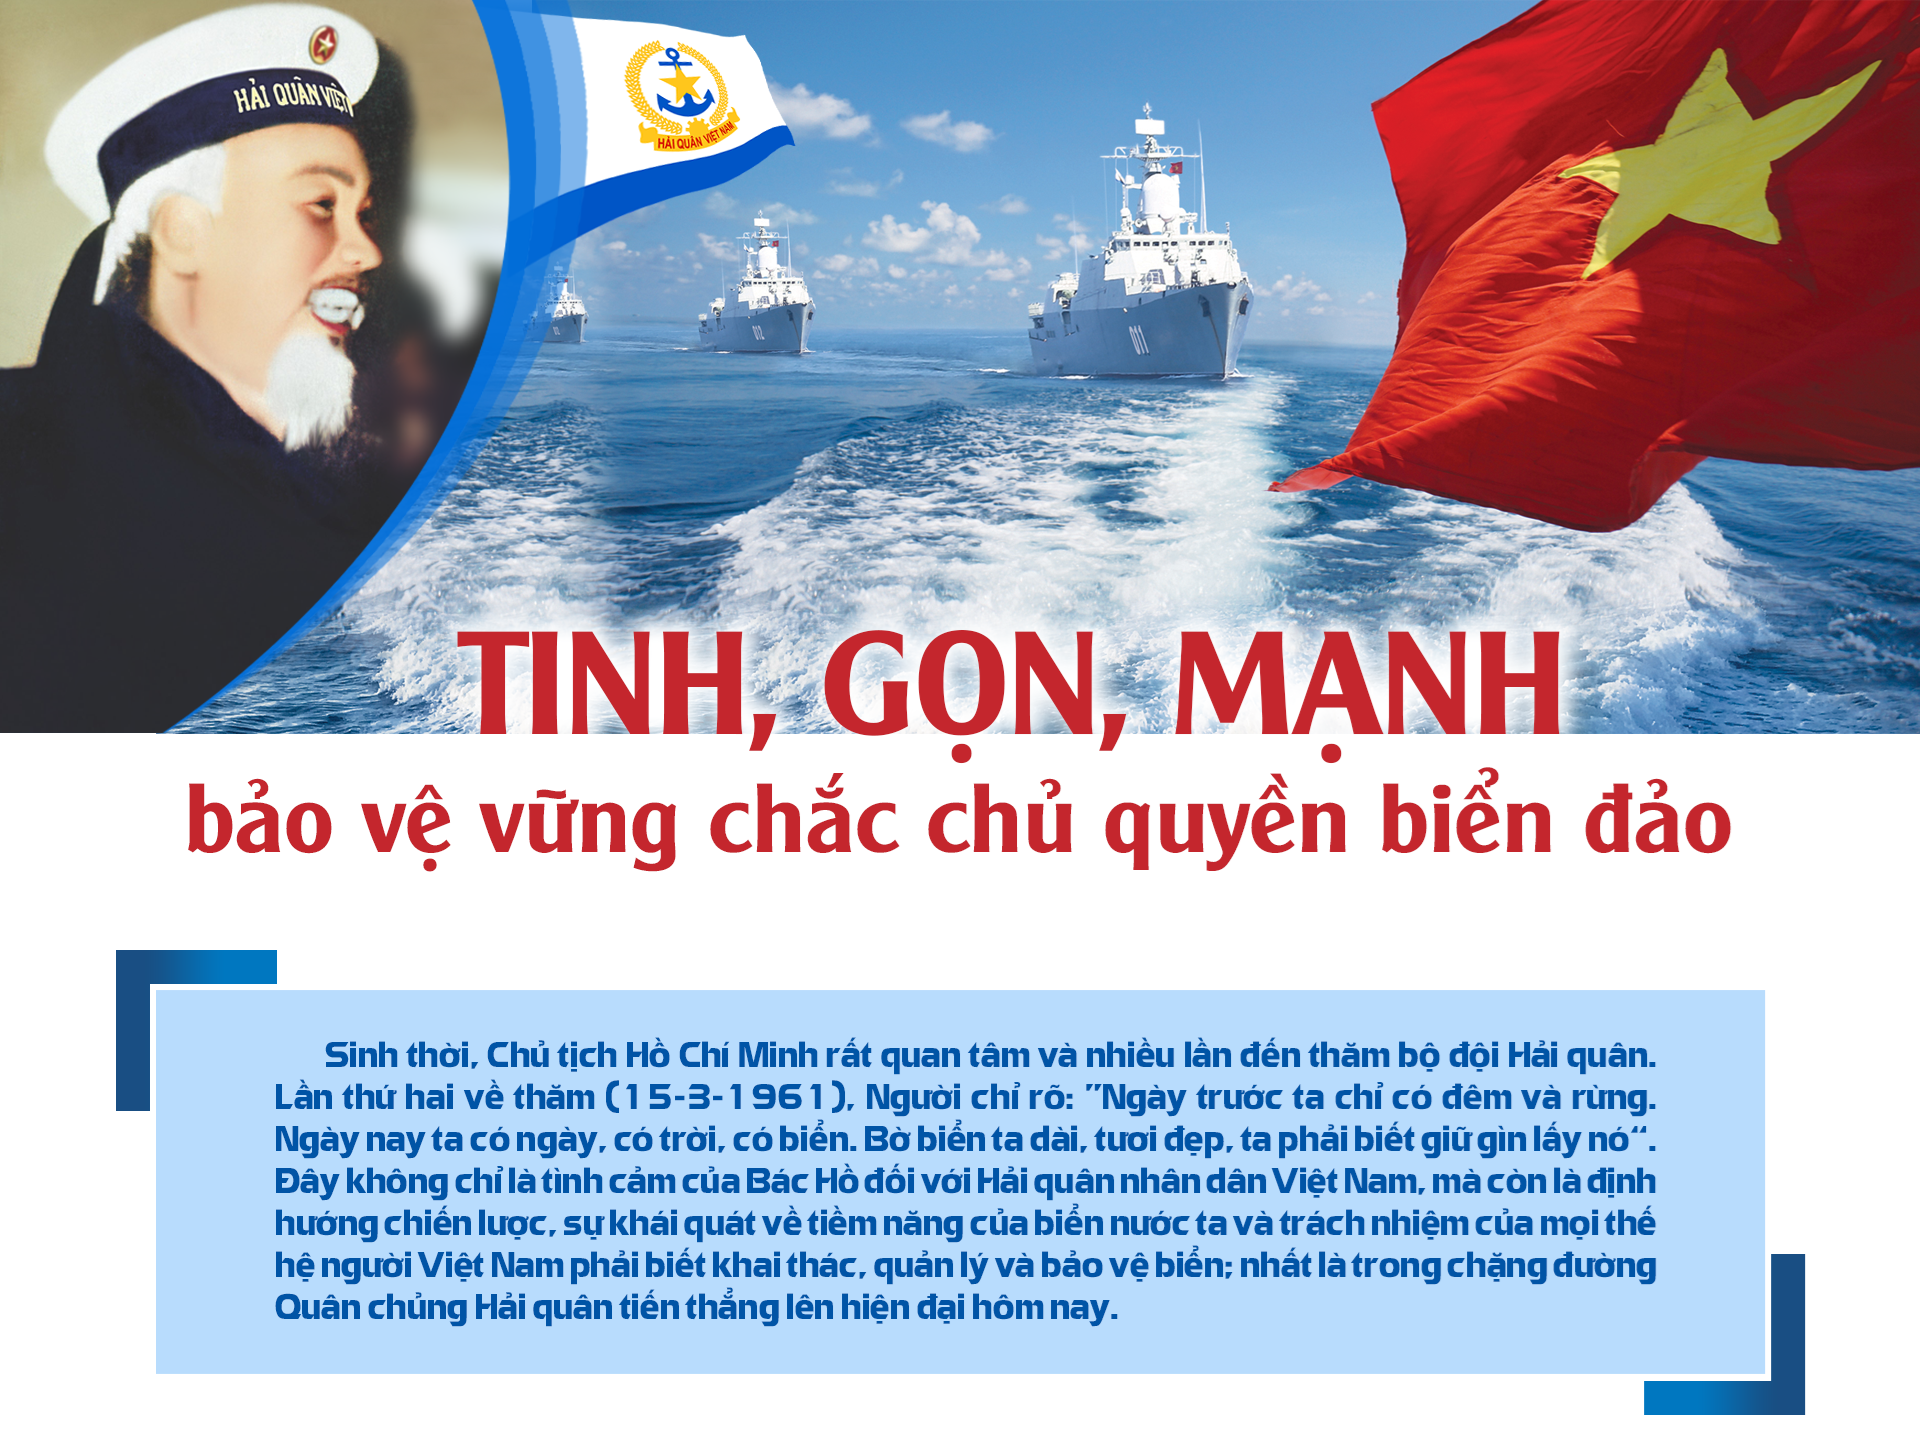 Chủ quyền biển đảo: Chủ quyền Biển Đông luôn được đặt lên hàng đầu và người Việt Nam vẫn kiên quyết bảo vệ chủ quyền này. Hãy tìm hiểu thêm về bức ảnh với chủ đề \